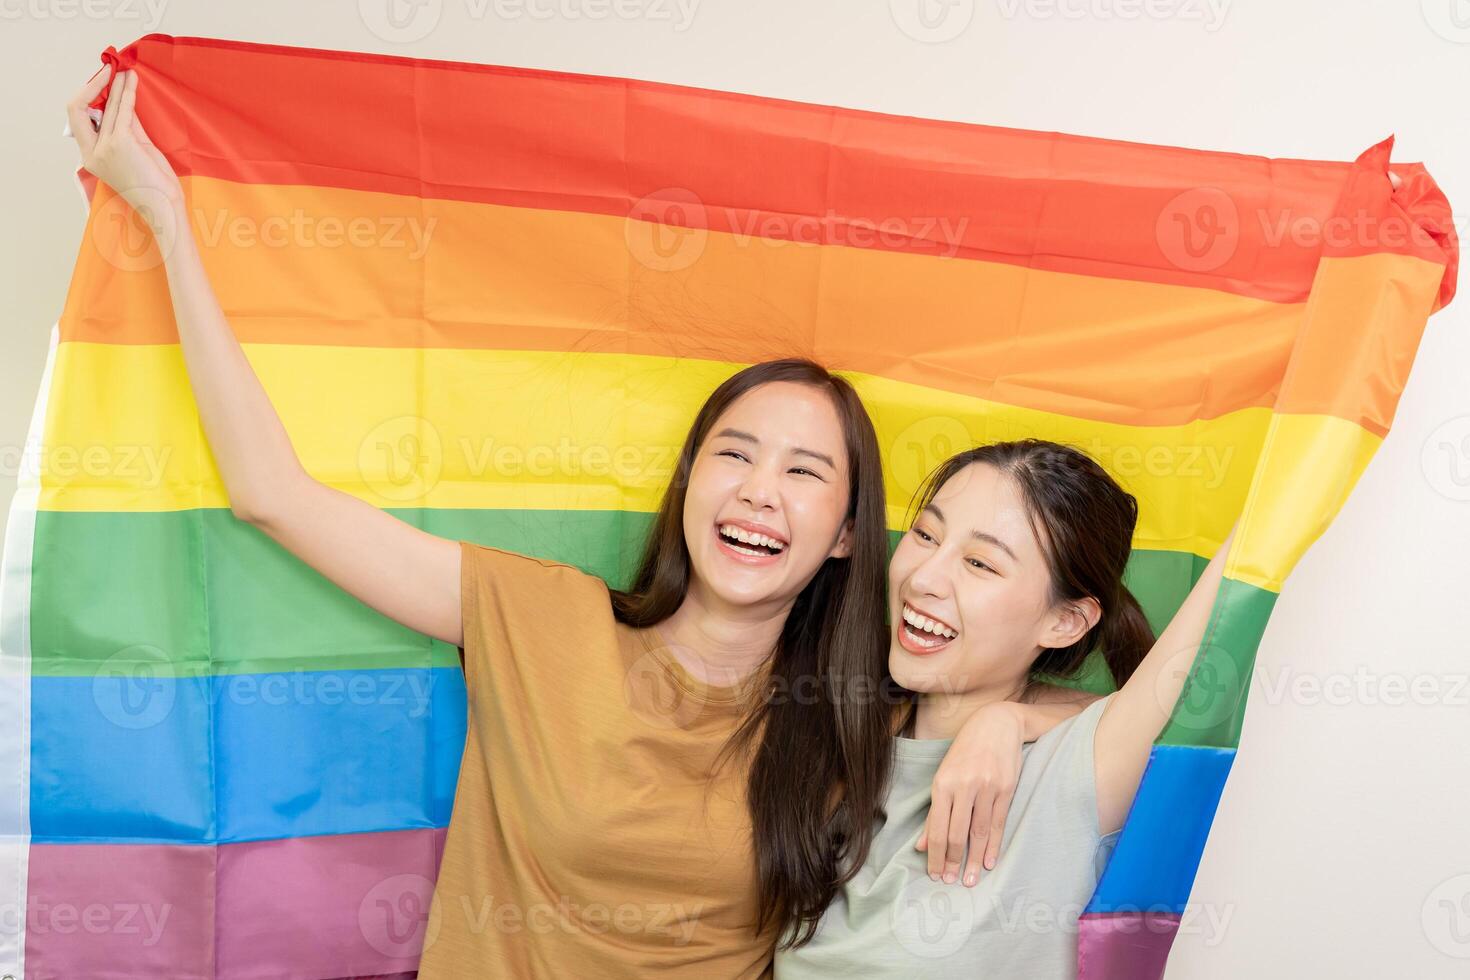 lgbt grupo. bueno mirando lesbiana parejas sonrisa brillantemente cubrir arco iris banderas asiático joven Pareja abrazando cada otro felizmente, amante en amar, bisexualidades, homosexualidad, libertad, expresión, contento vida foto